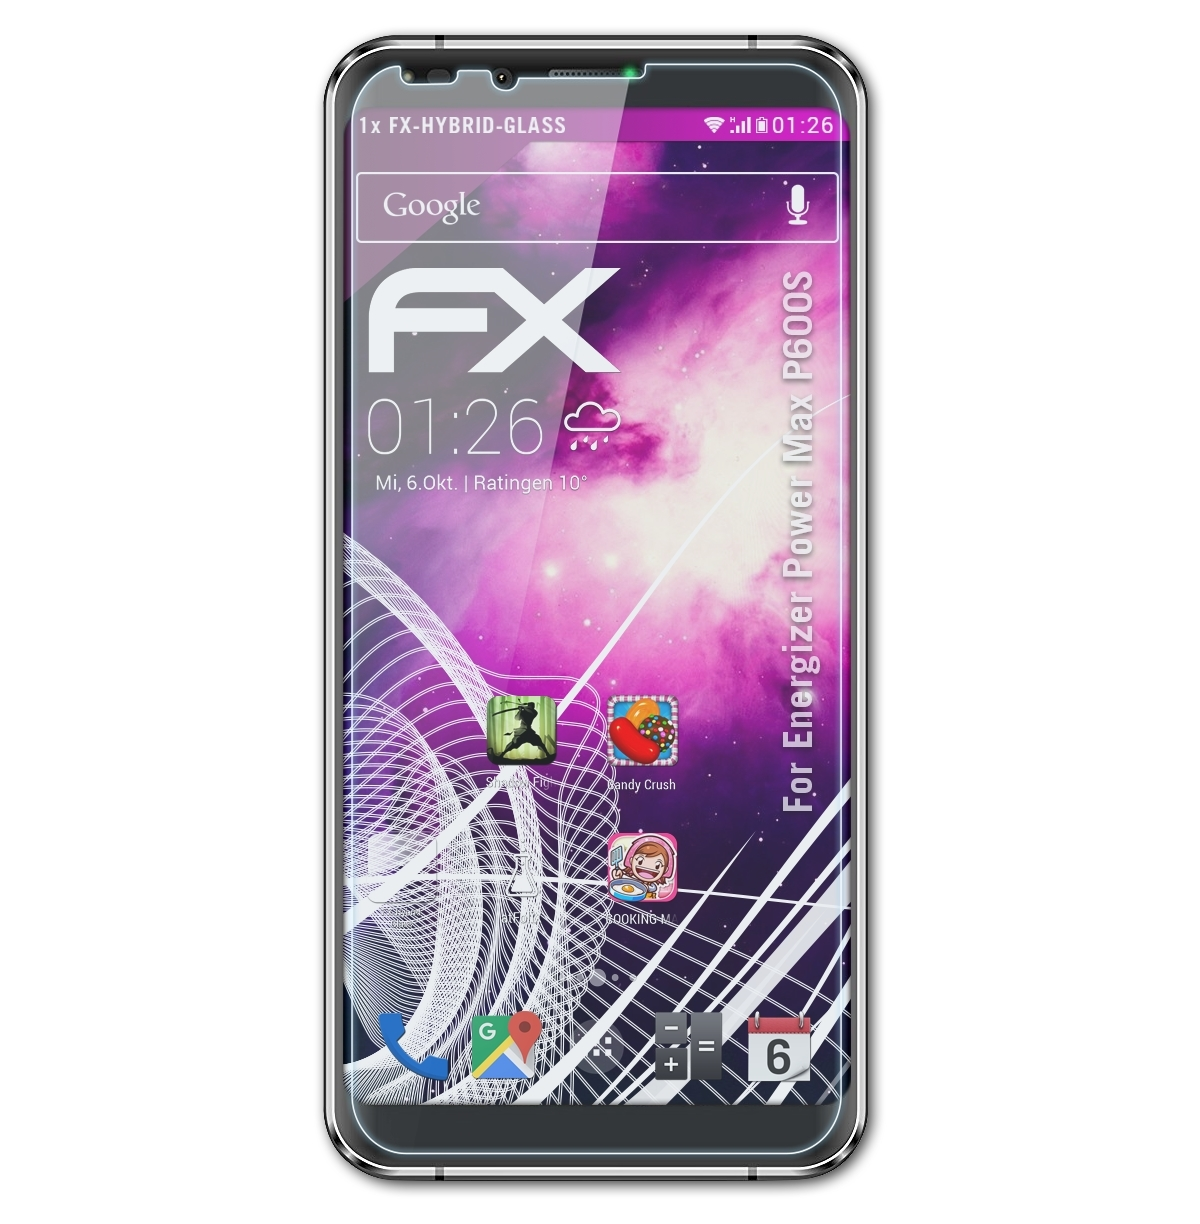 P600S) Energizer Power FX-Hybrid-Glass Max Schutzglas(für ATFOLIX